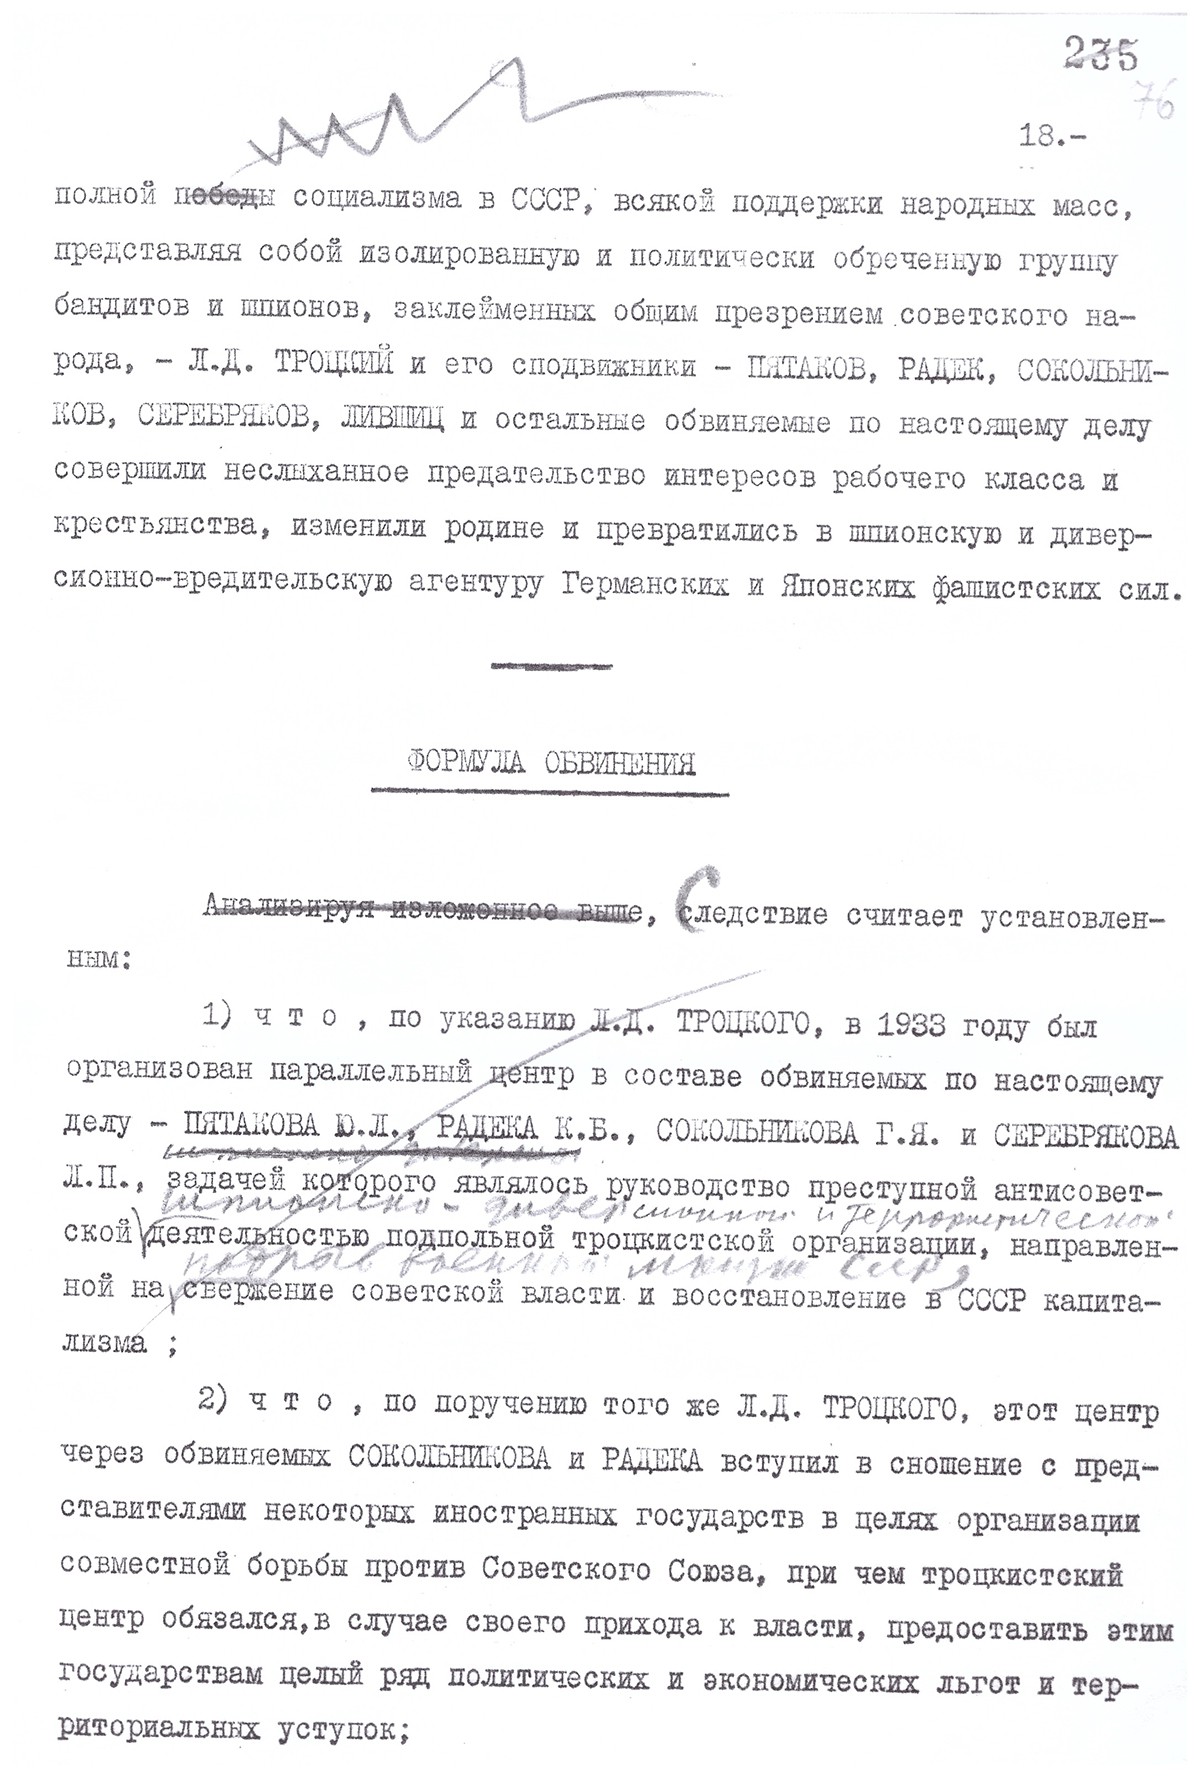 Правка Сталиным проекта обвинительного заключения по делу «Параллельного антисоветского троцкистского центра». Январь 1937 года*